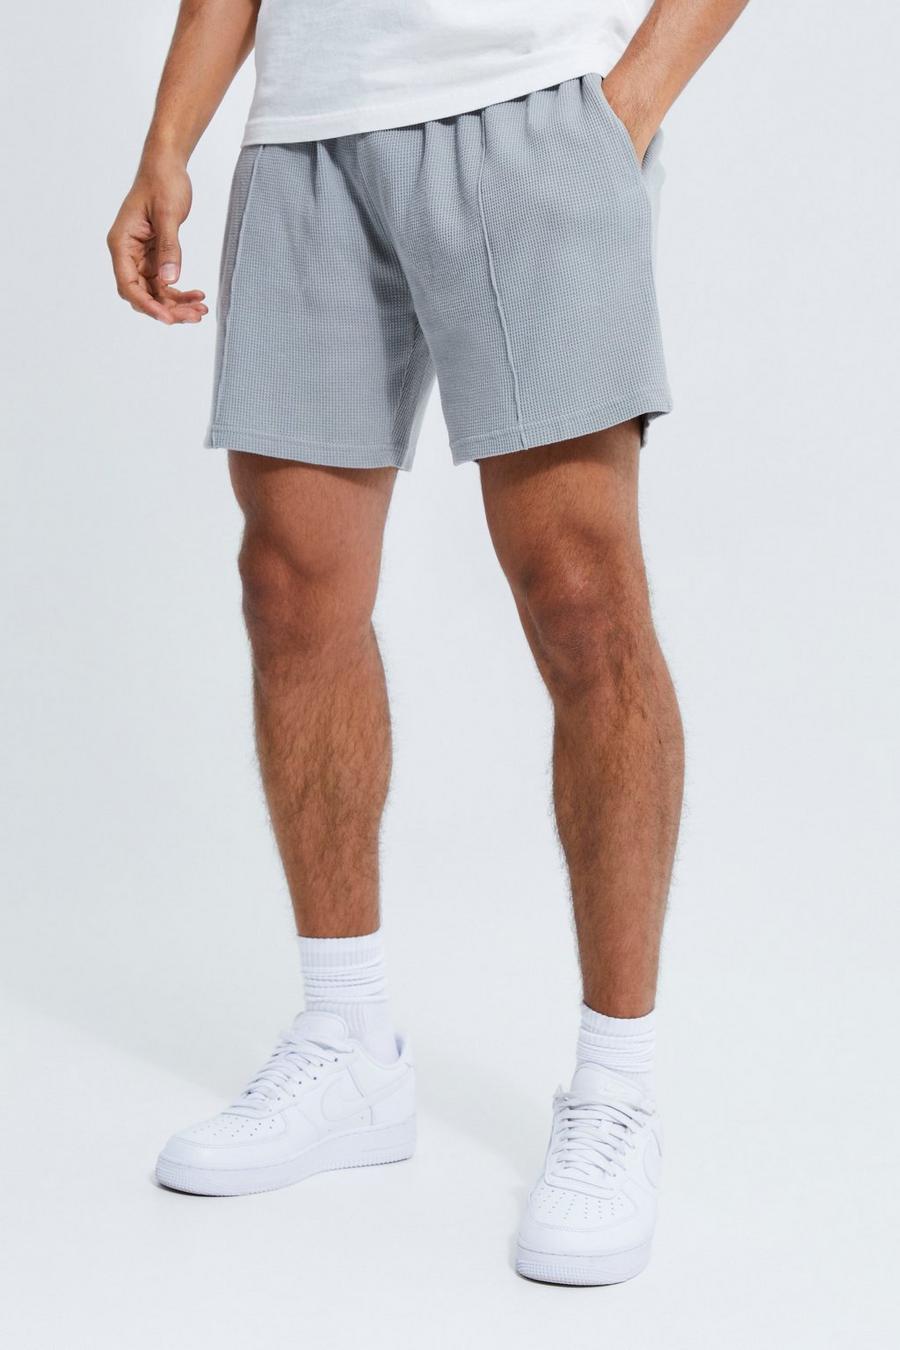 Lockere Shorts in Waffeloptik, Pewter grau